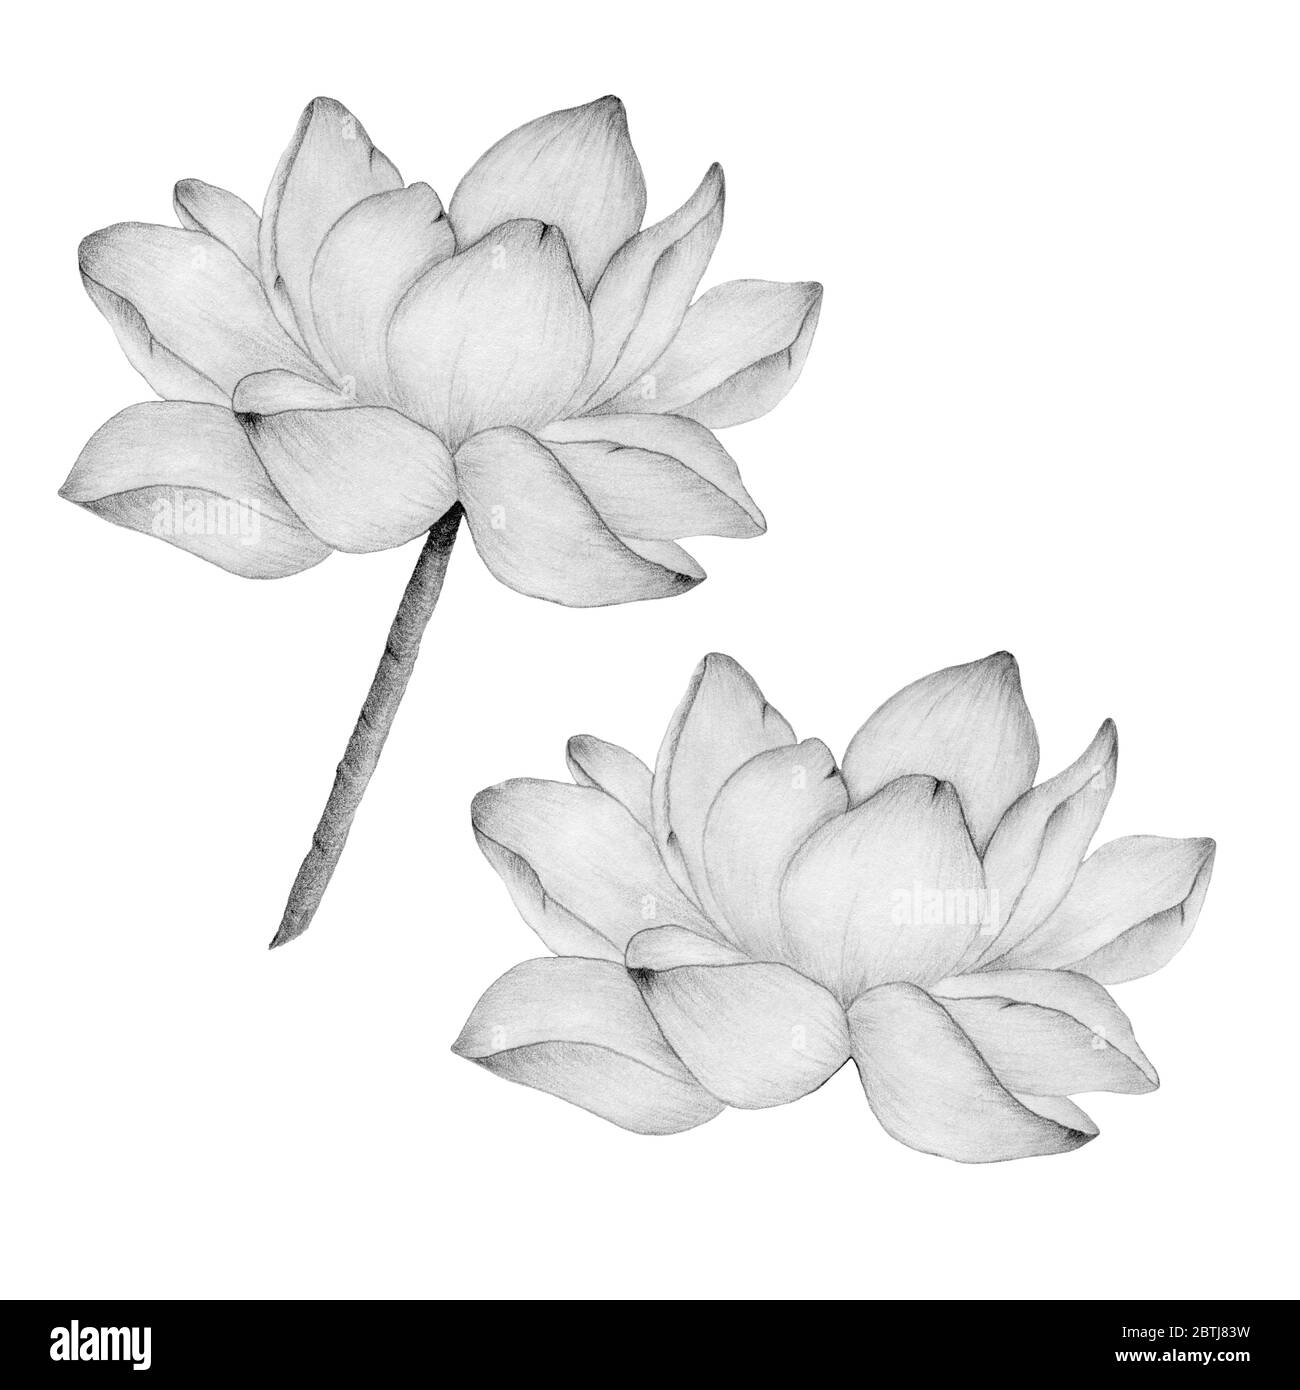 fleur de lotus en dessin au crayon isolé sur une illustration blanche et botanique avec fleur de lotus réaliste, croquis au crayon avec nénuphars Banque D'Images